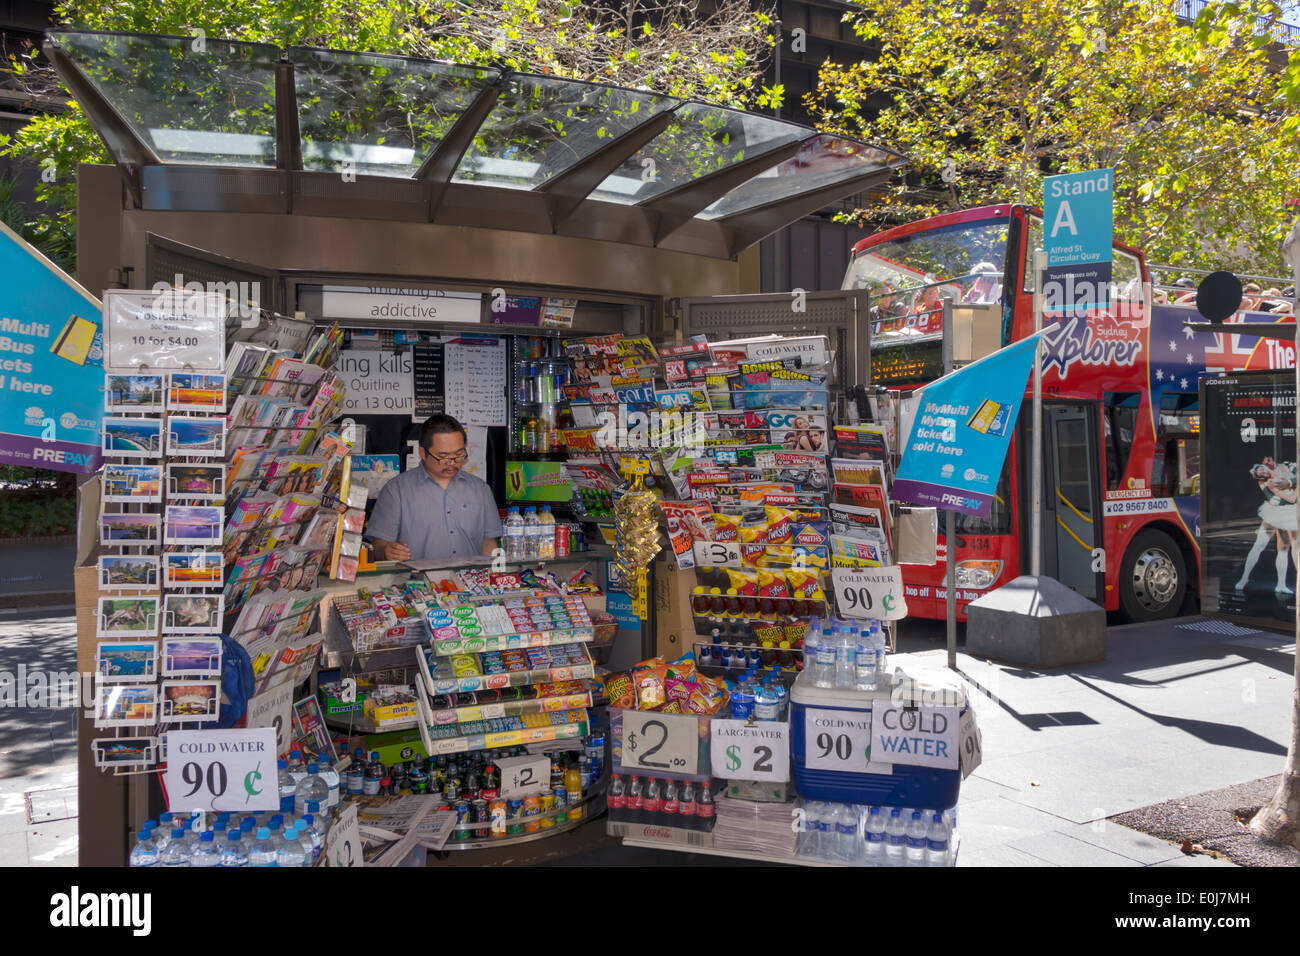 Sydney Australie,Pitt Street,kiosque,vente,collations,snack,magazines,homme asiatique,travail,travail,directeur,AU140310027 Banque D'Images